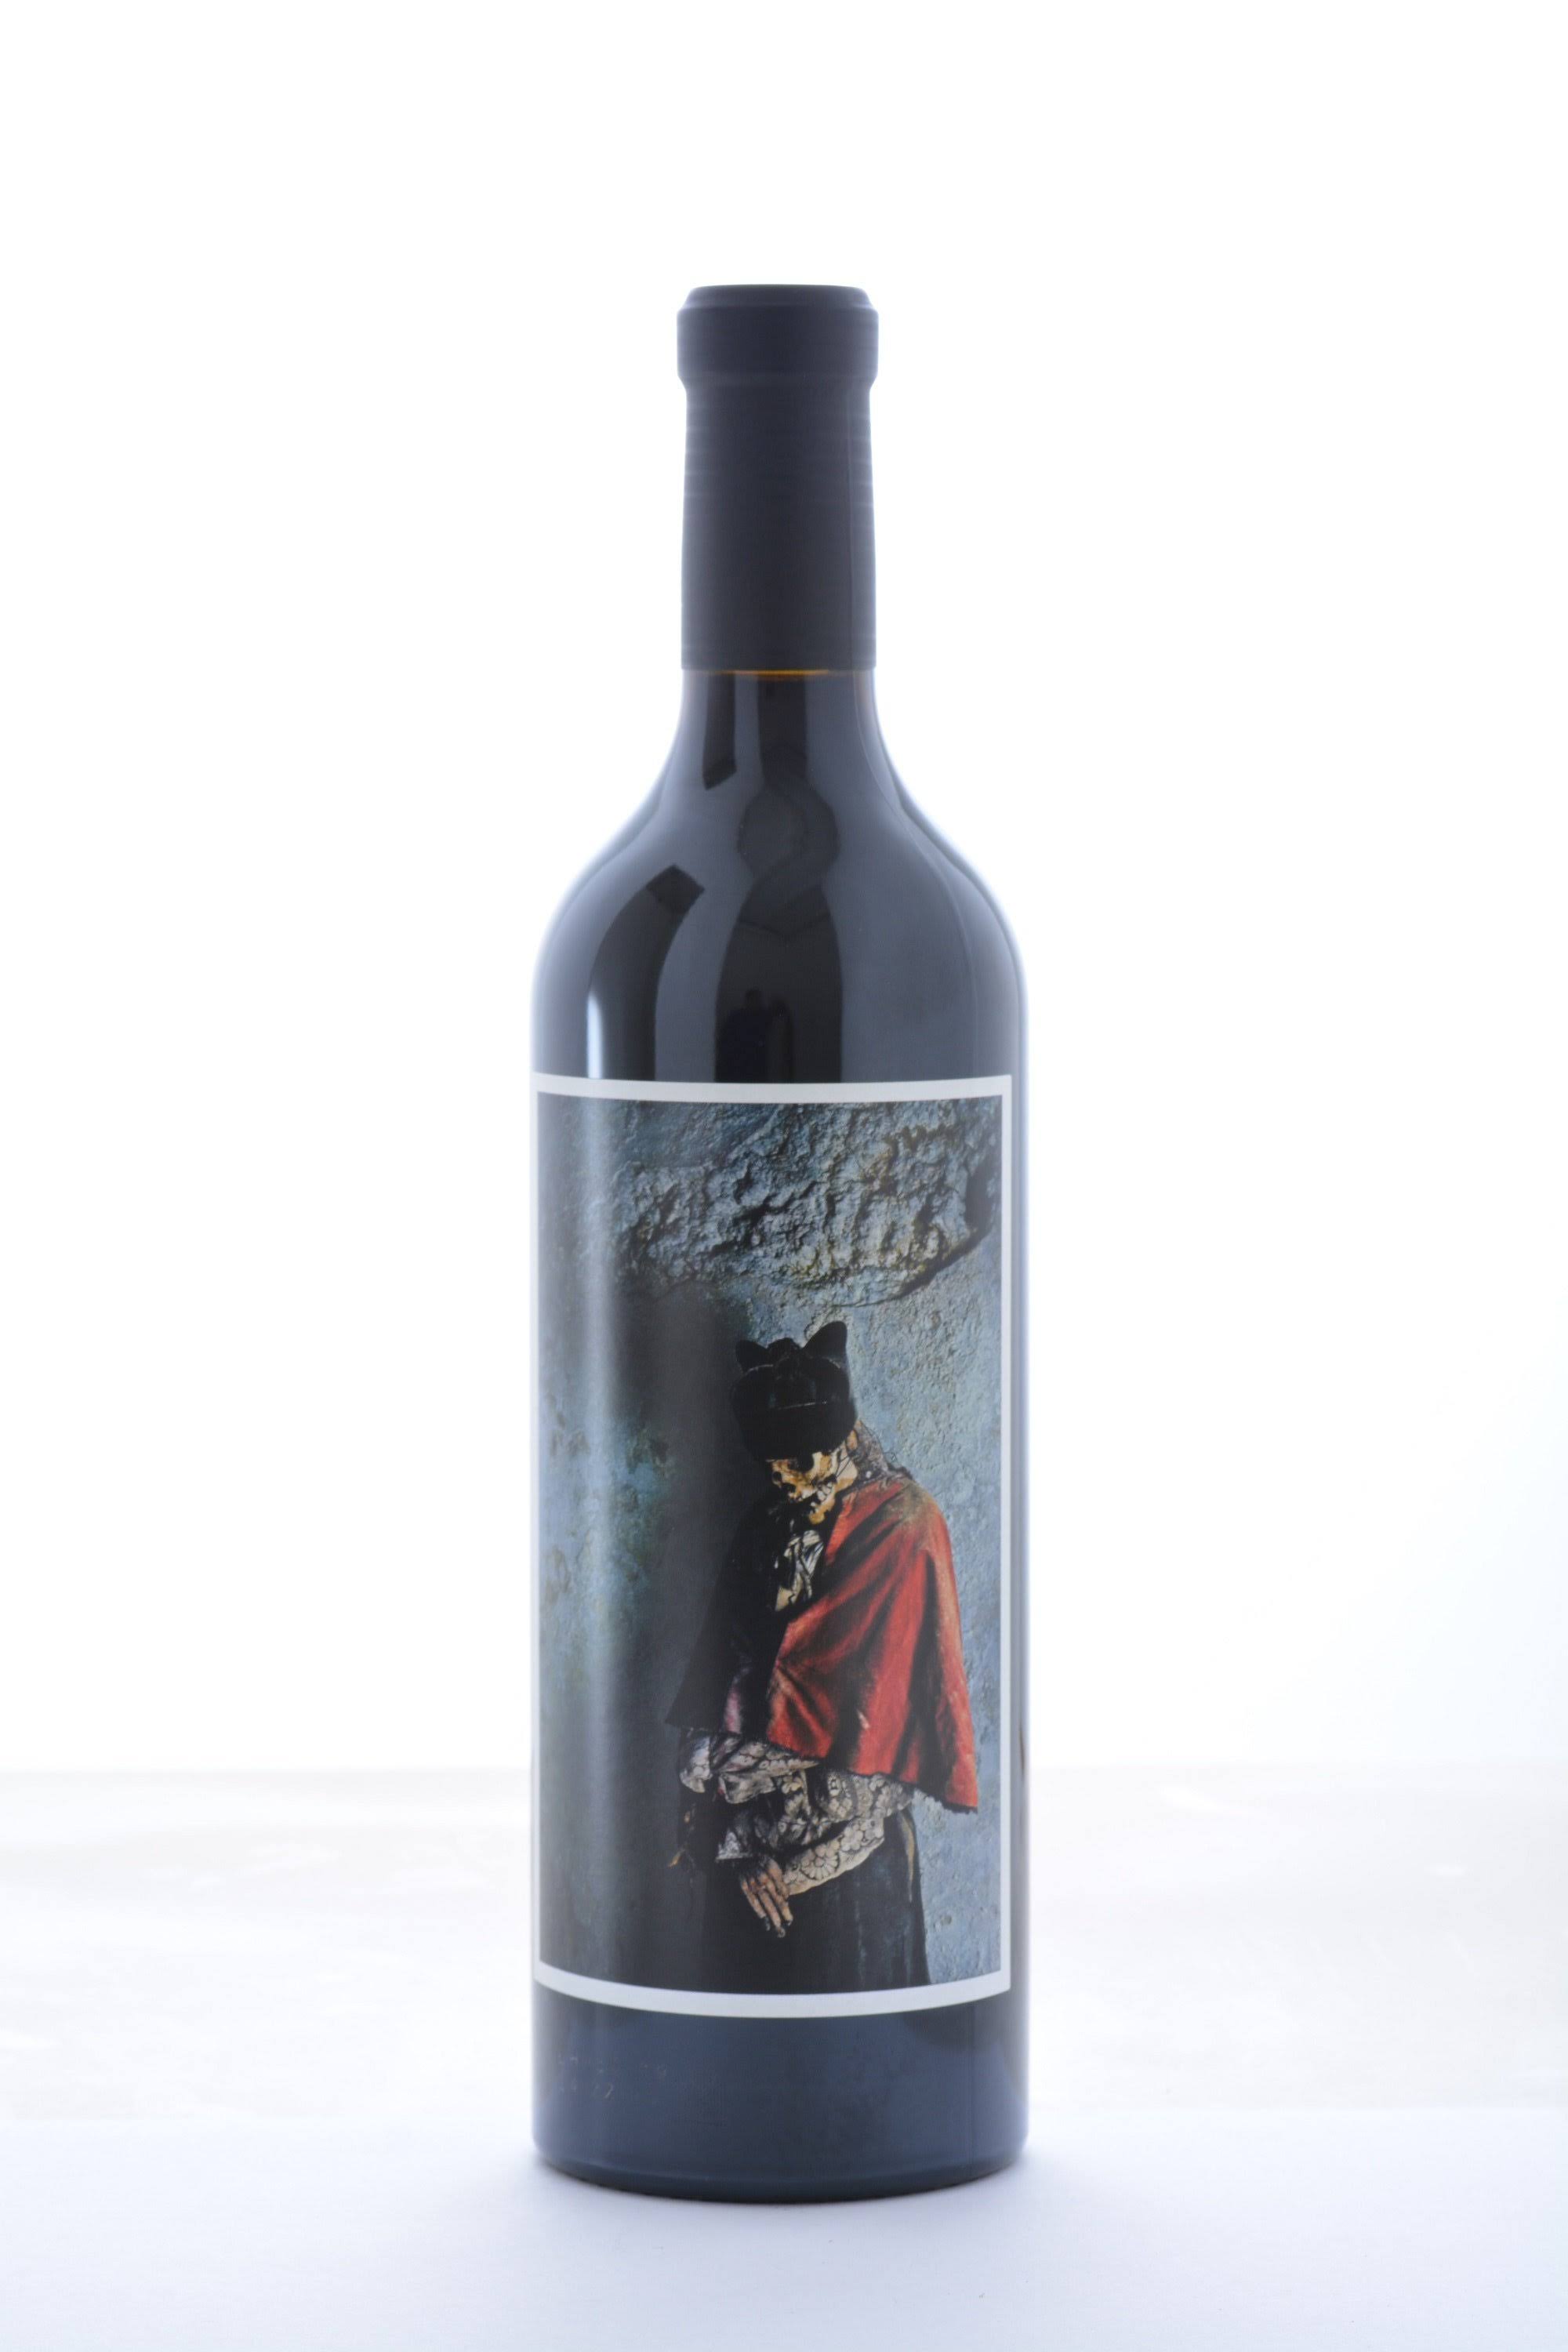 Orin Swift Cabernet Sauvignon Palermo Red Wine - Napa Valley, USA